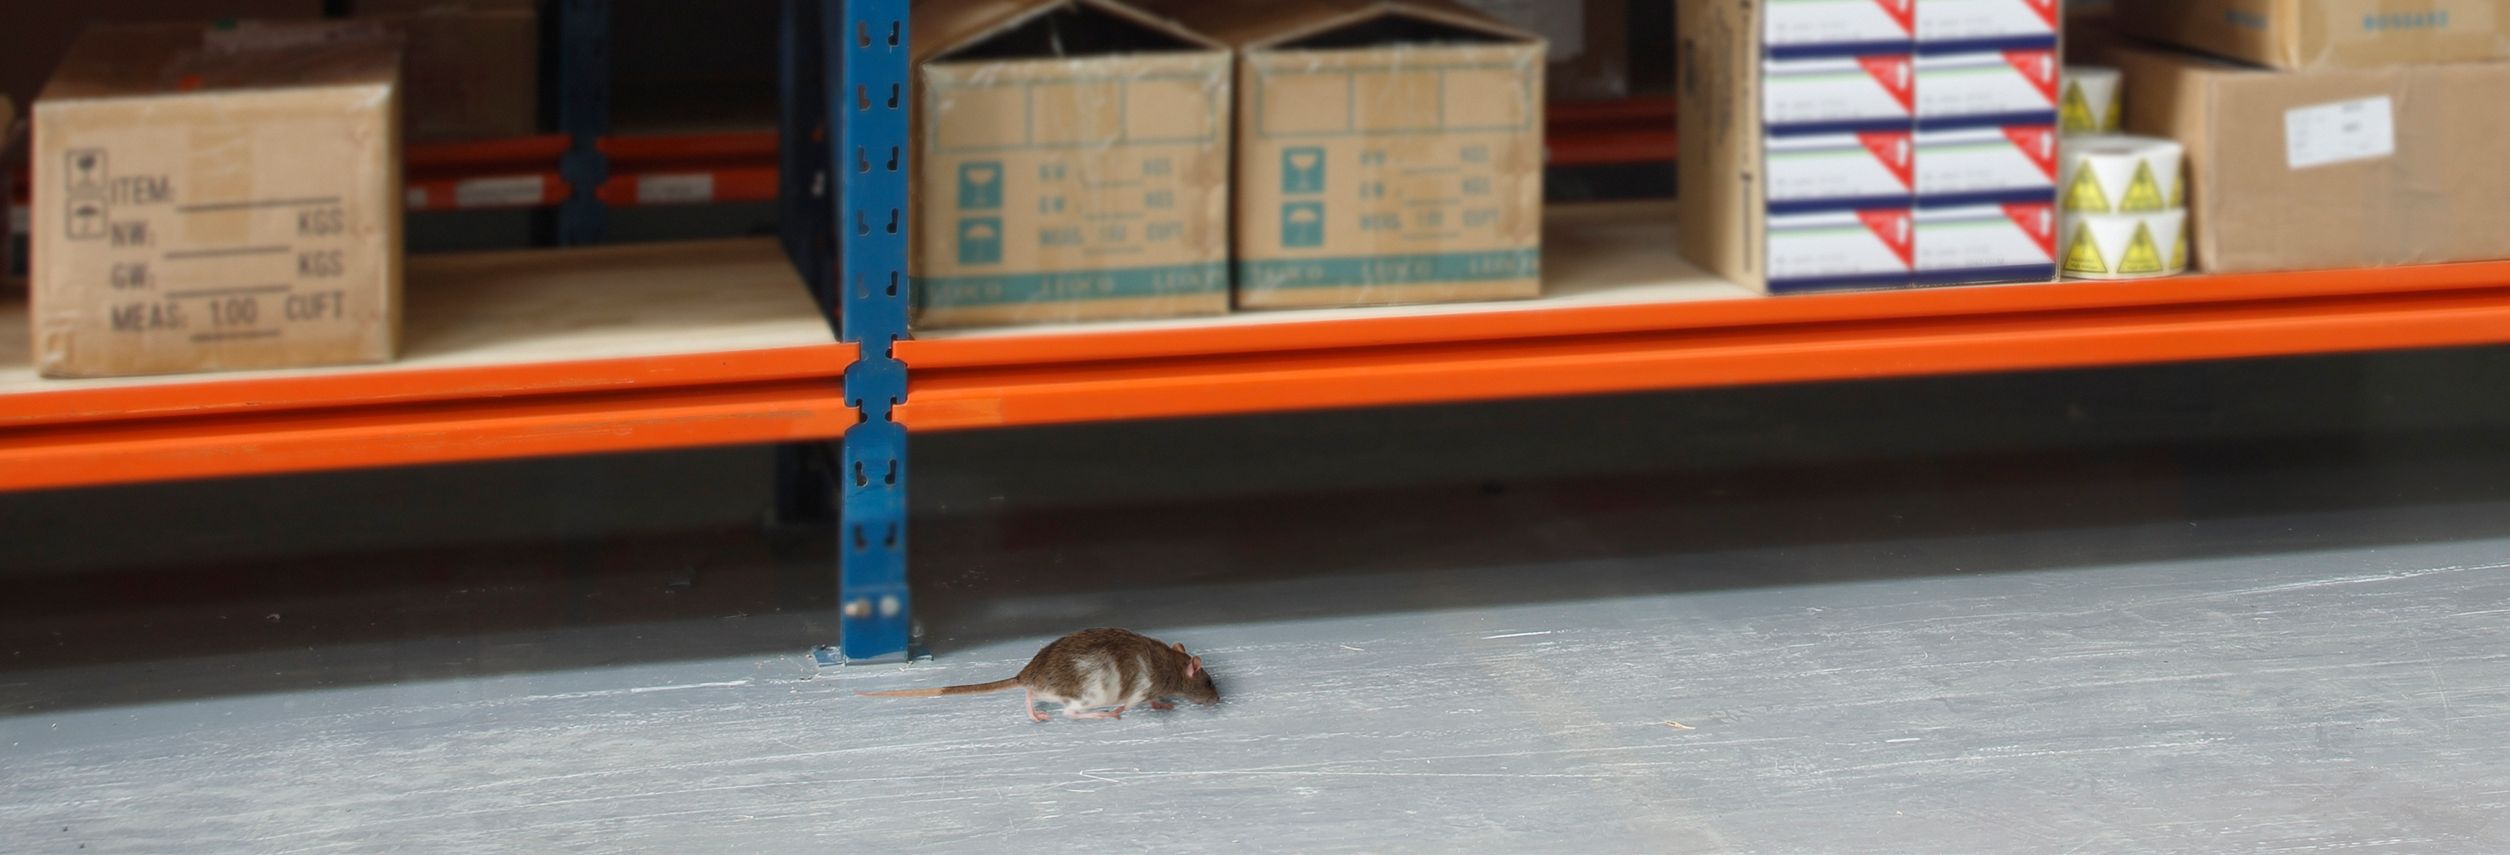 Economía Ostentoso George Bernard Son efectivos los ultrasonidos para ratas y ratones? - Anticimex